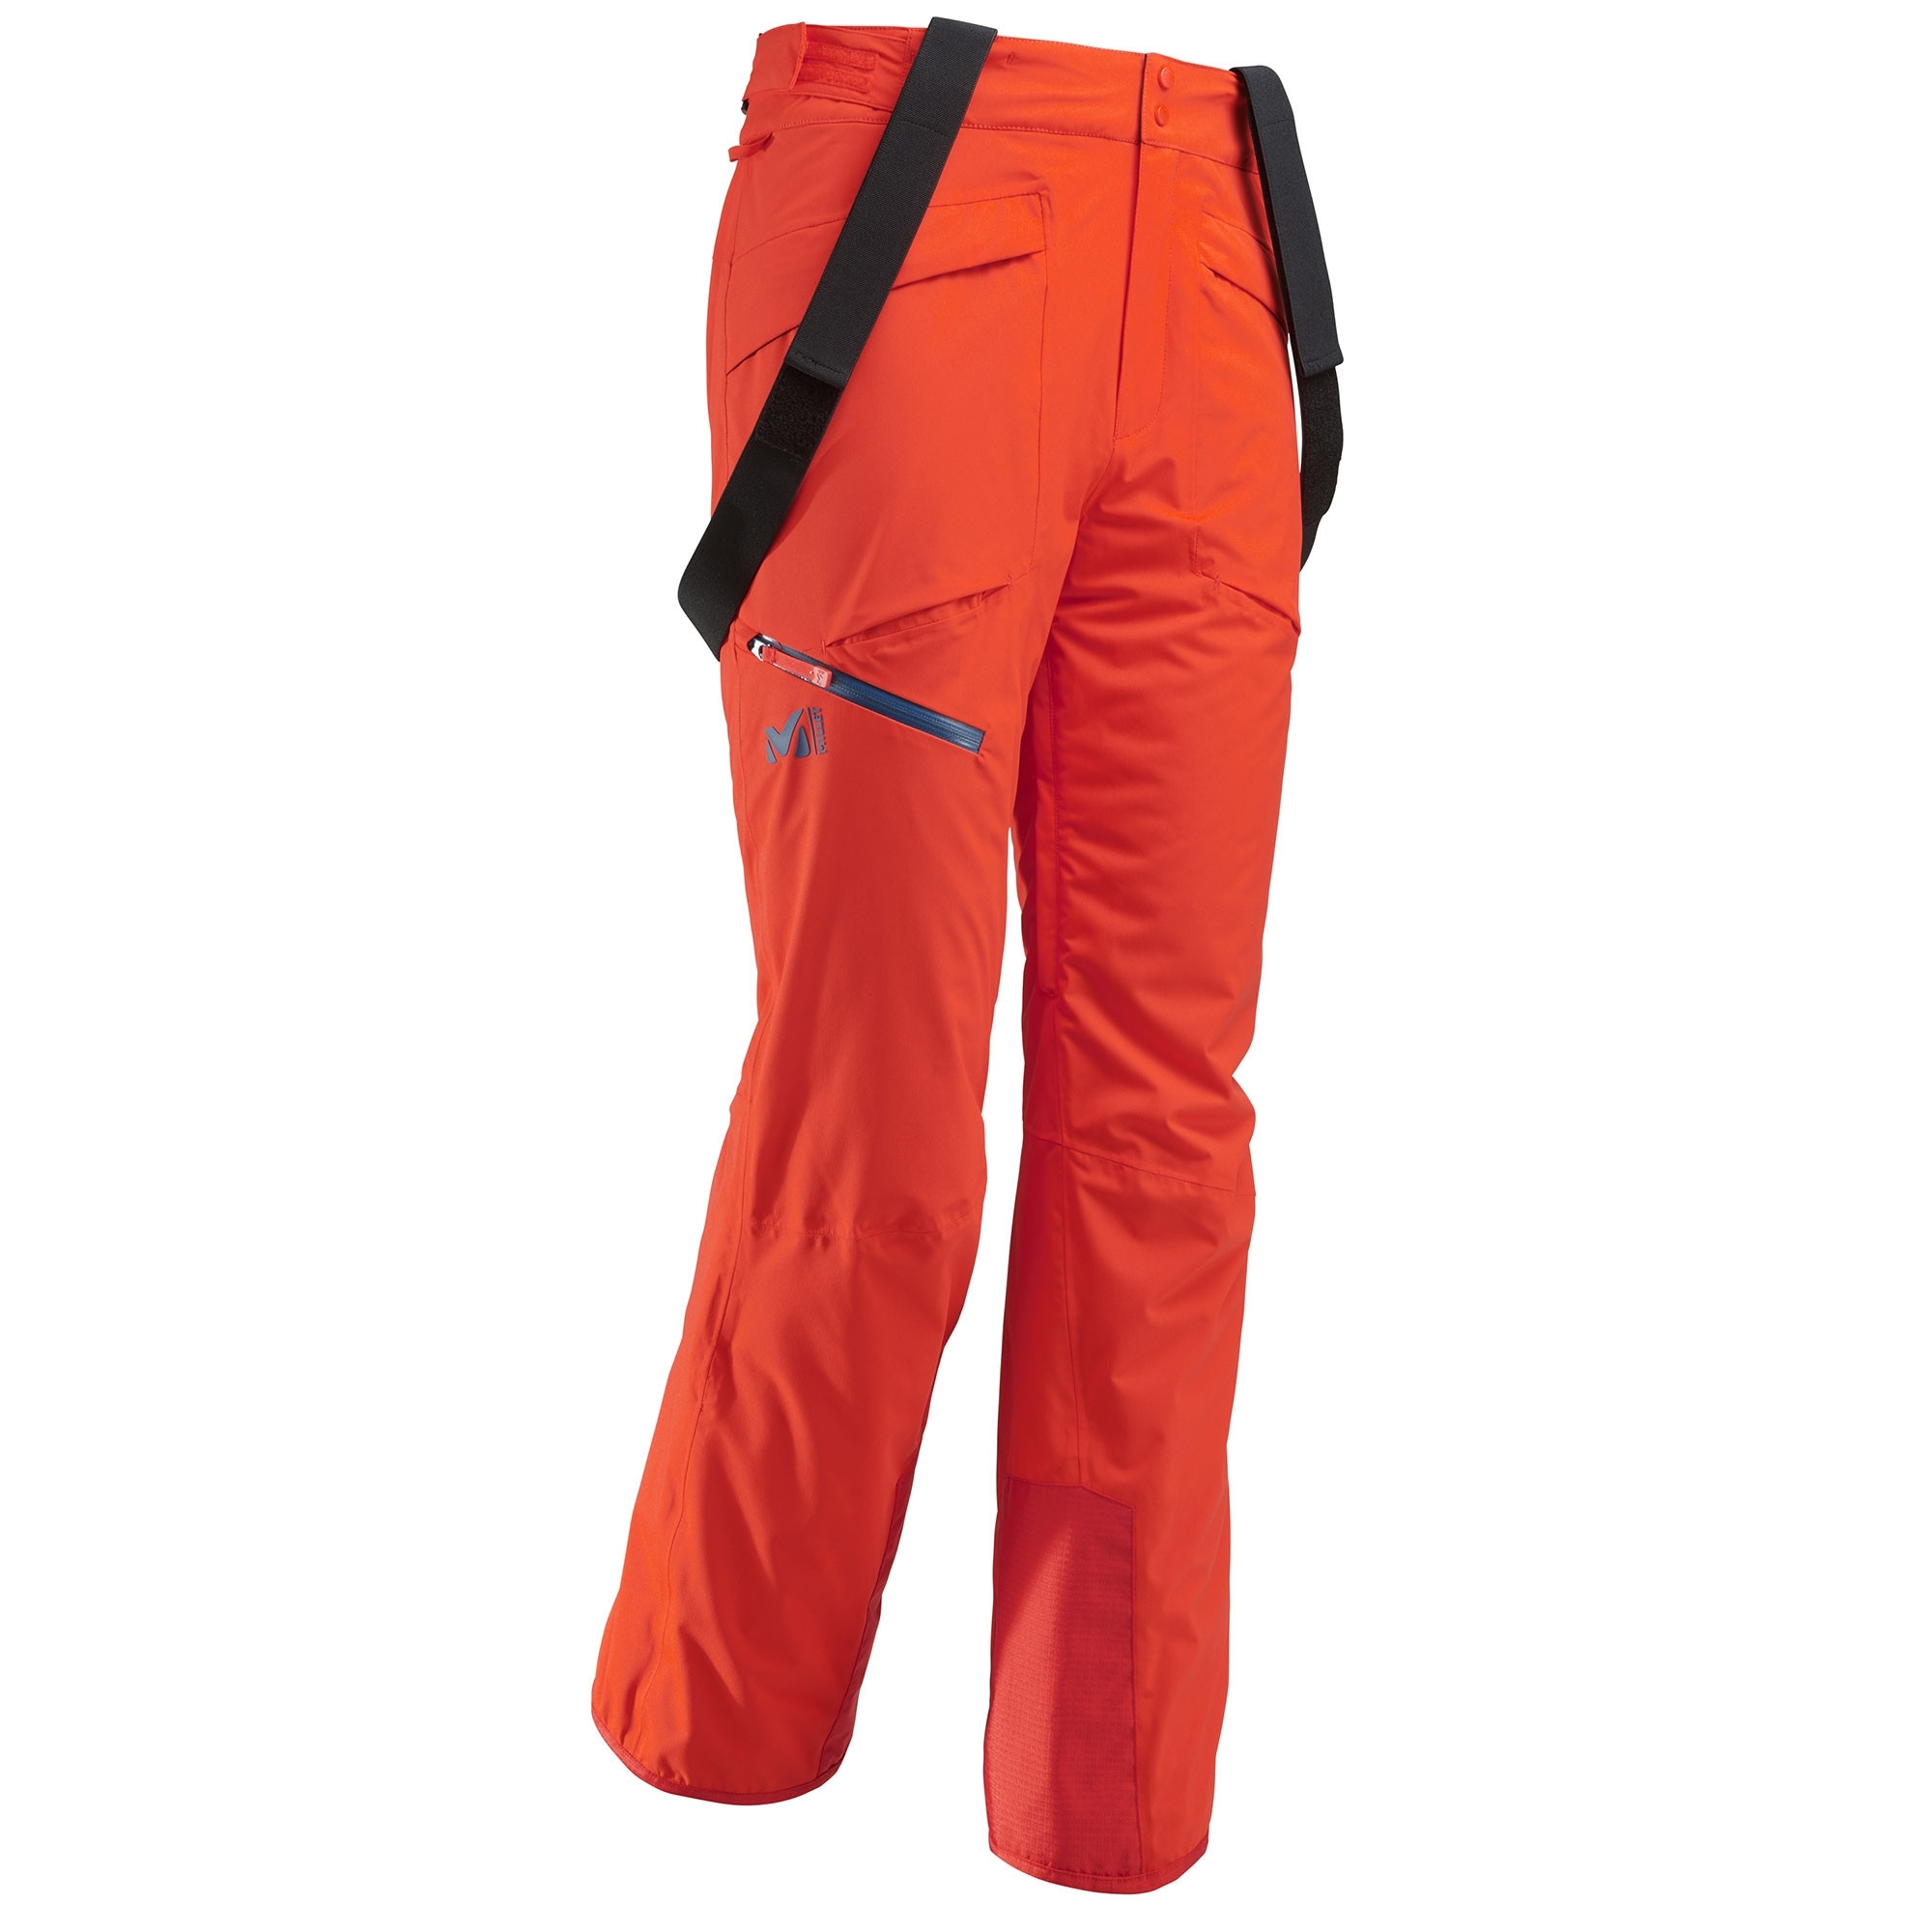 Men's Millet Hayes Stretch Orange Ski Pants - Free Delivery!